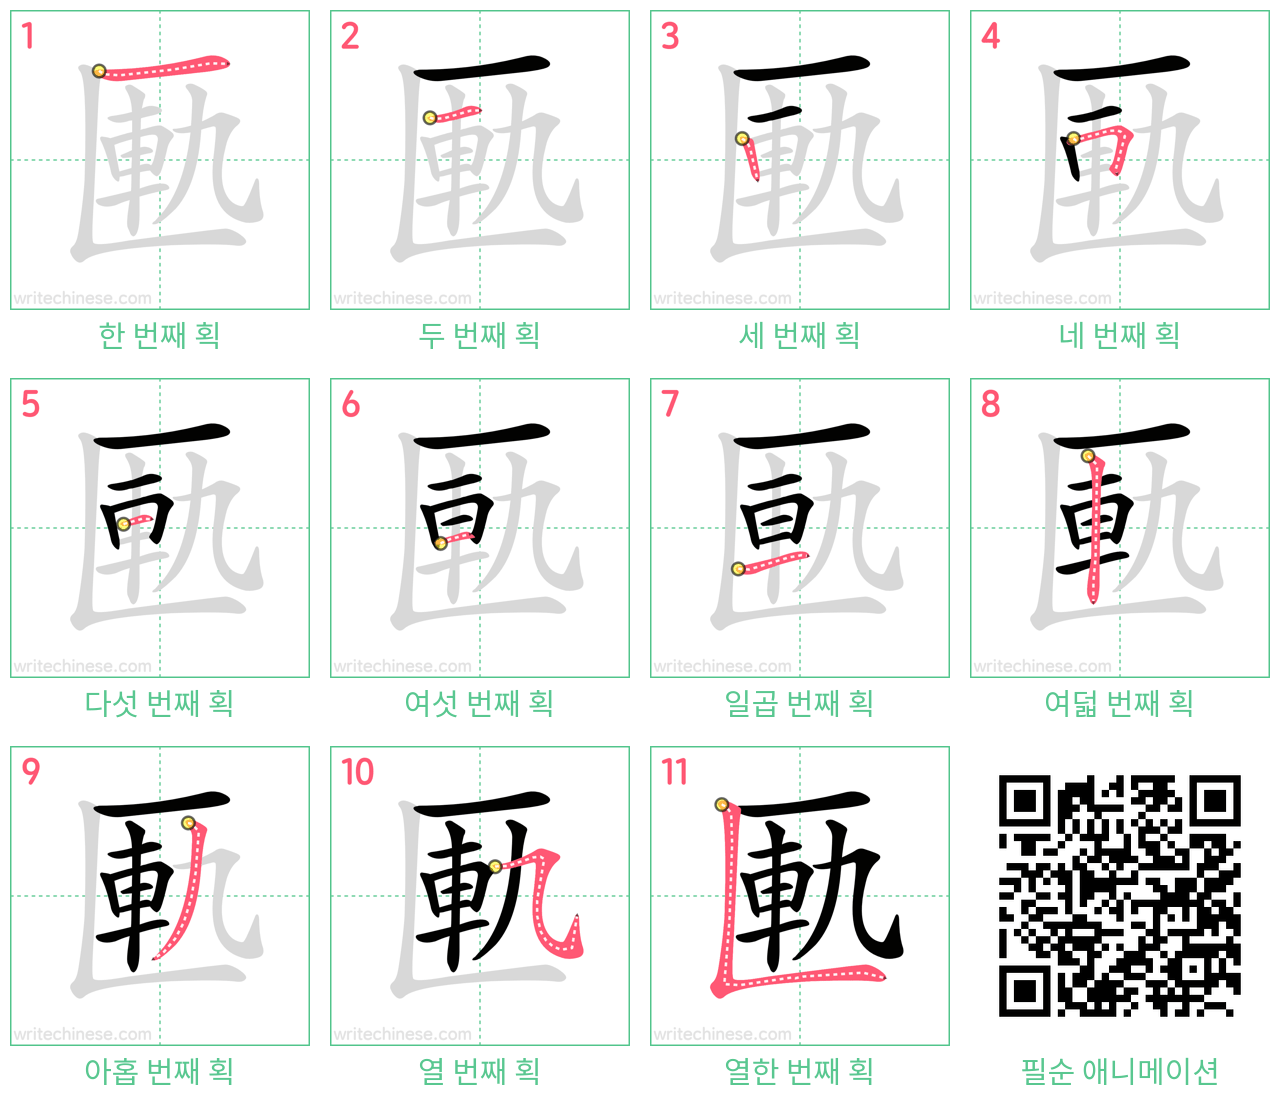 匭 step-by-step stroke order diagrams